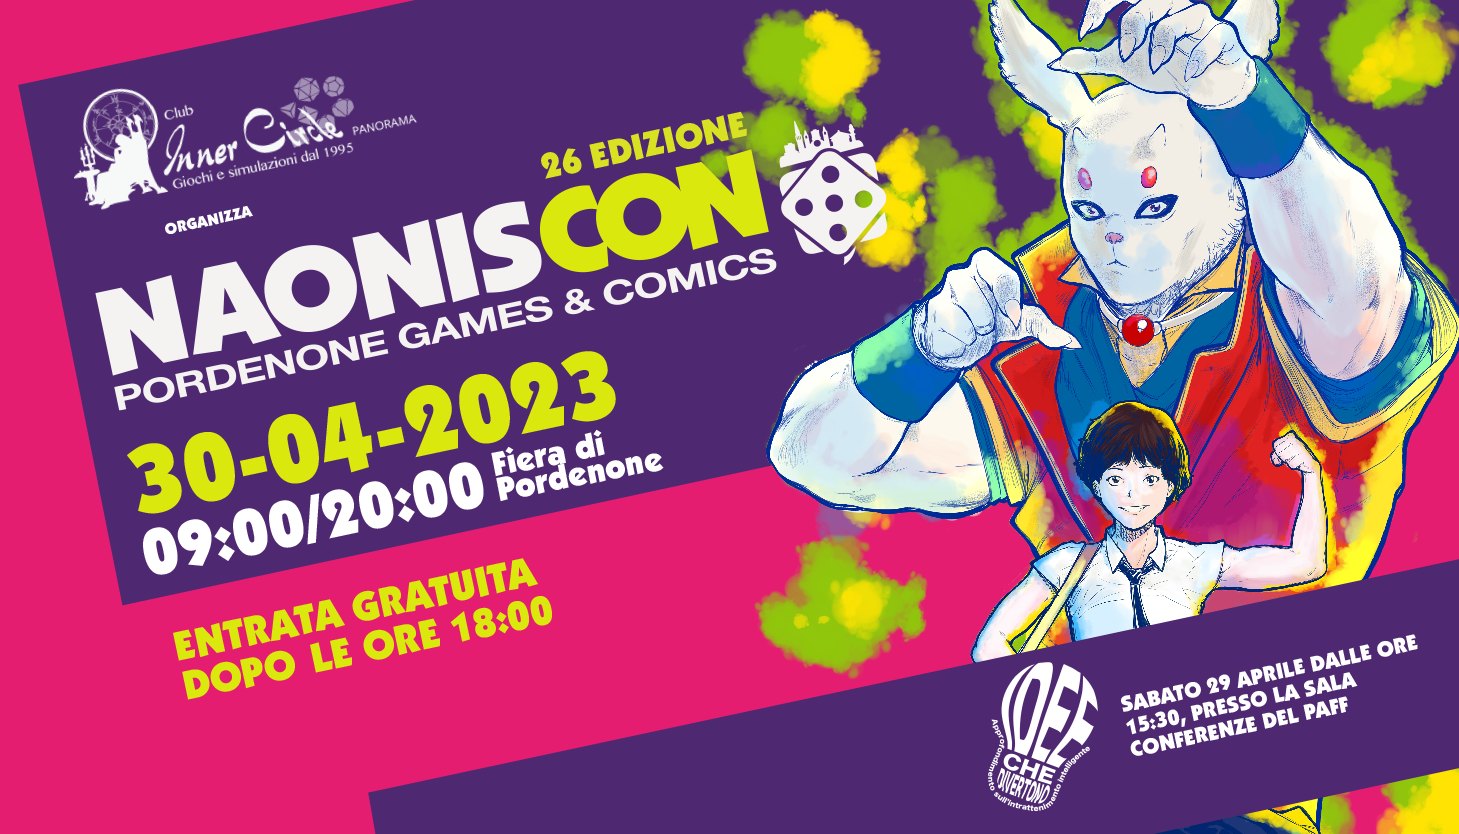 NaonisCon 2023, Pordenone Games e Comics, Pordenone